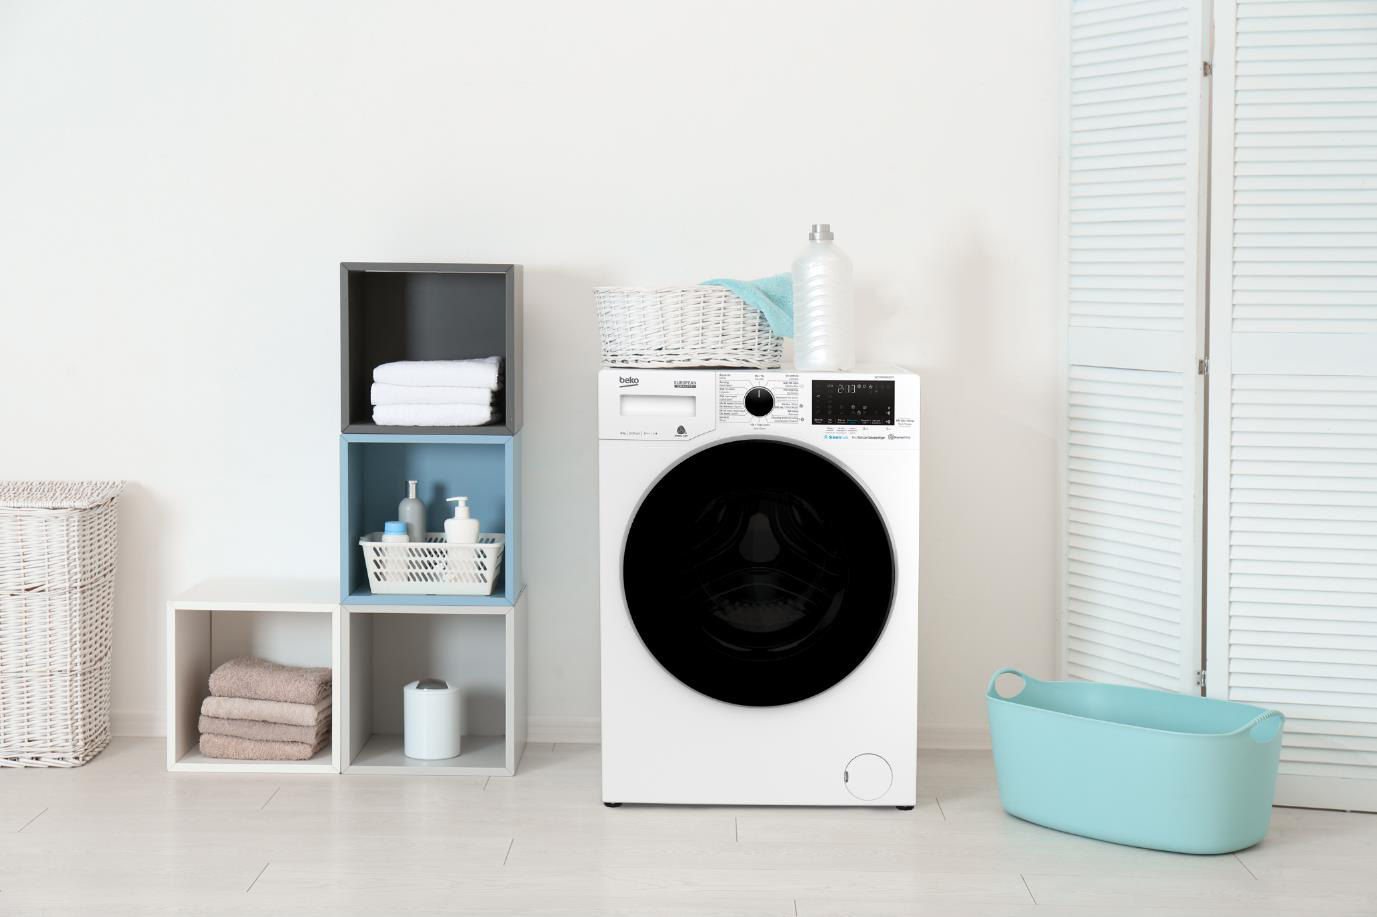 Khử khuẩn và tiết kiệm điện: Tiêu chí chọn mua máy giặt năm 2020 - 3